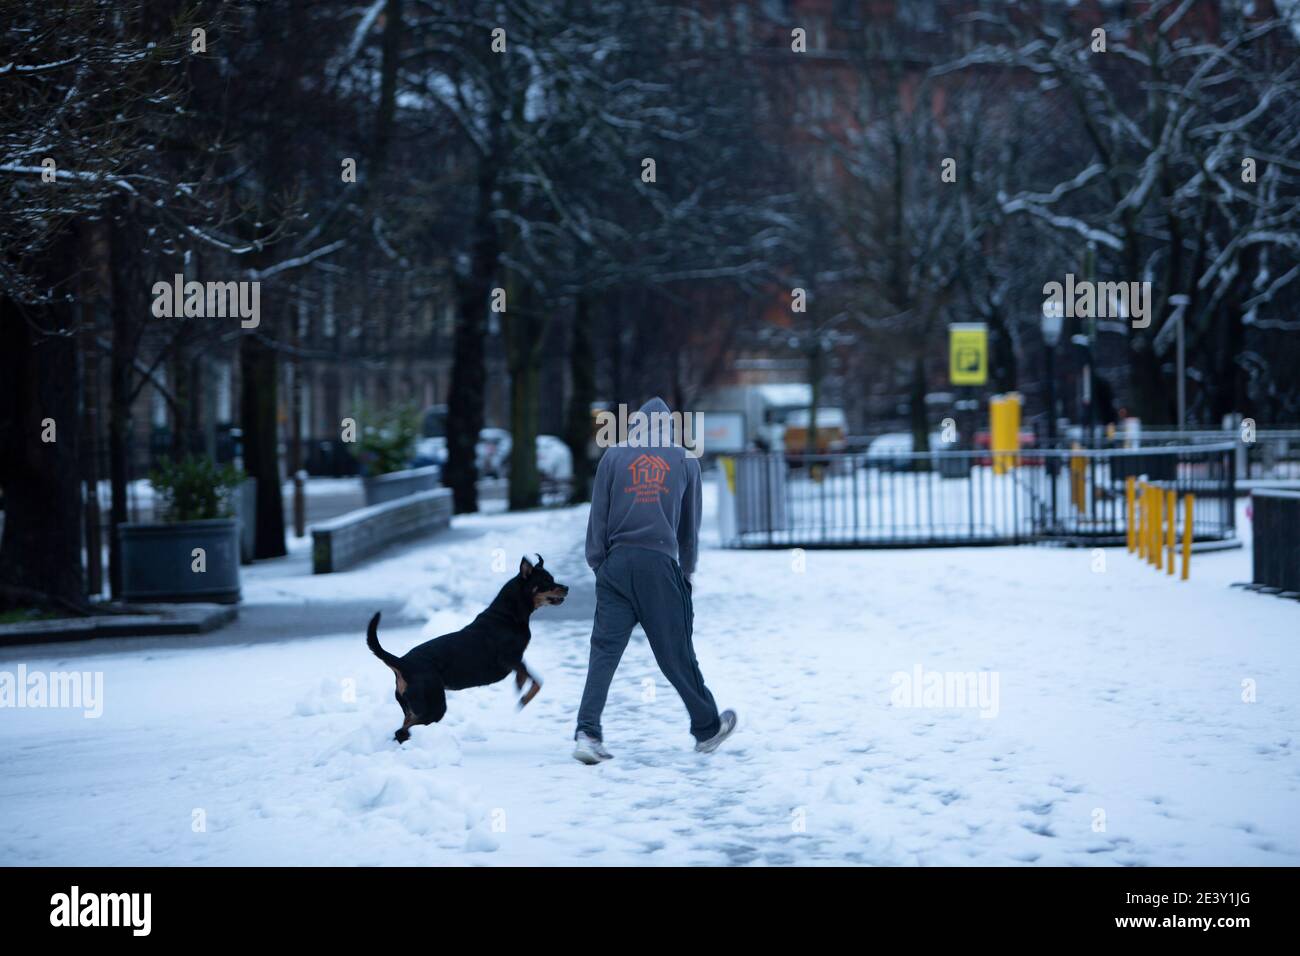 Édimbourg, Royaume-Uni. 21 janvier 2021. Météo écossaise, Storm Christoph laisse de la neige pour profiter de certains locaux à Édimbourg. Les membres du public aiment la neige avec son chien. Credit: Pako Mera/Alay Live News Banque D'Images